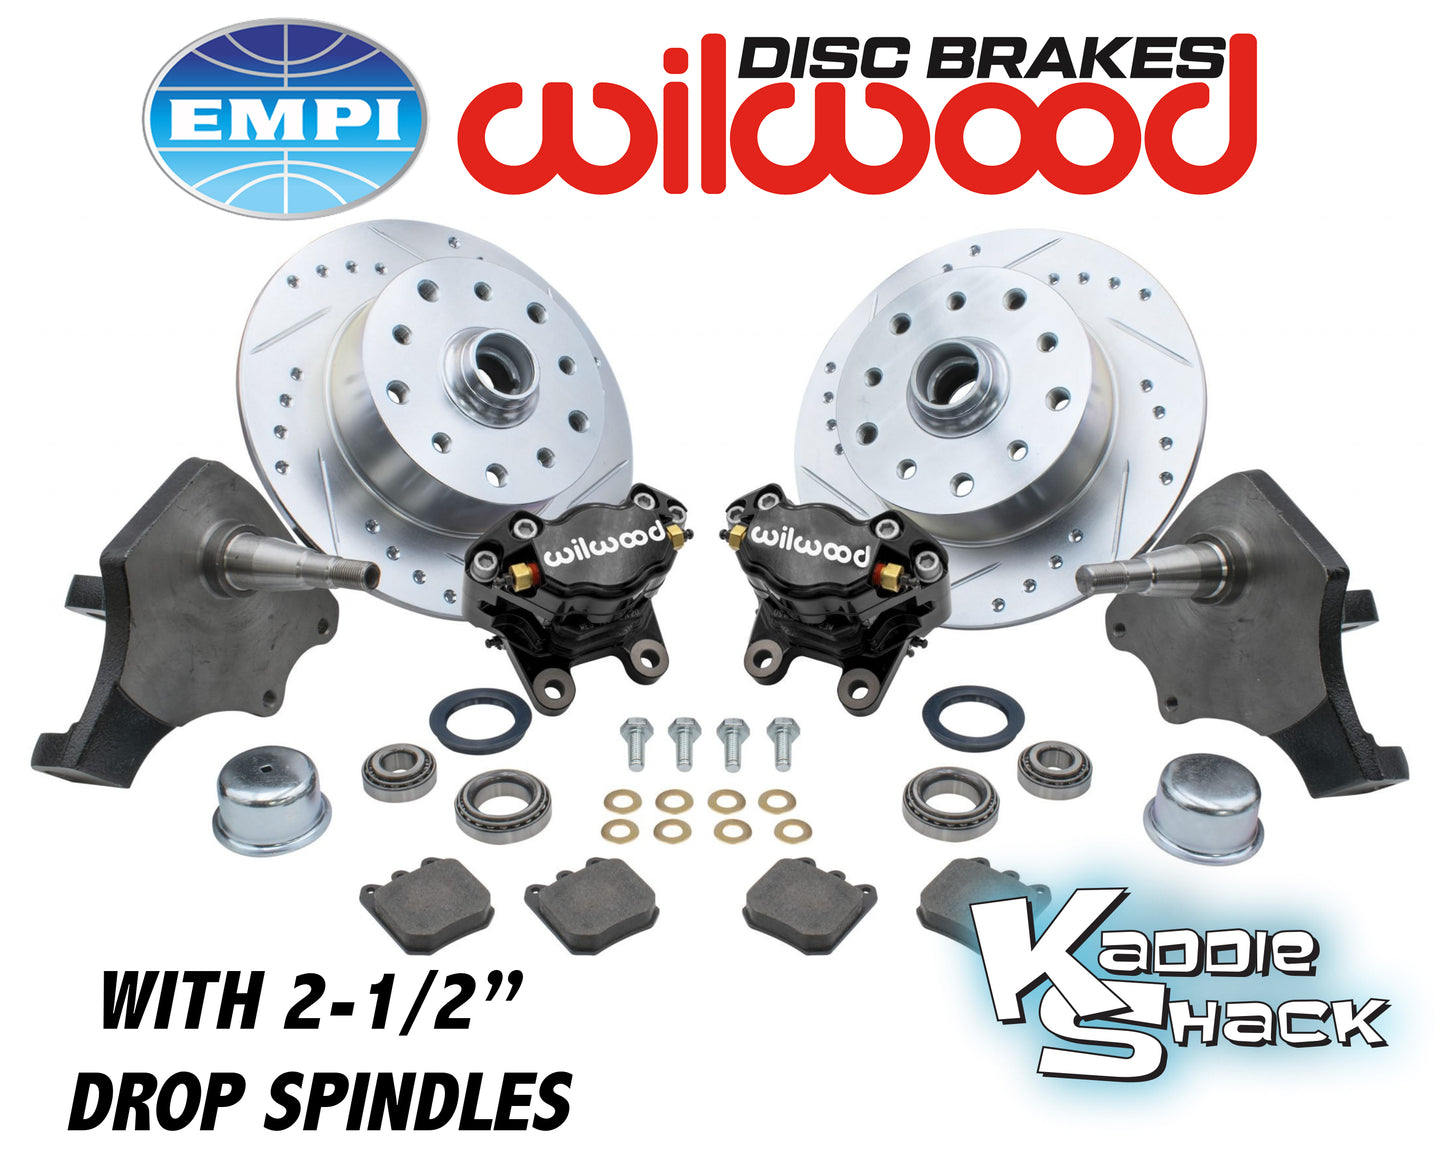 Wilwood Brakes w/ 2-1/2" Drop Spindles, Porsche/Chev, BJ Black